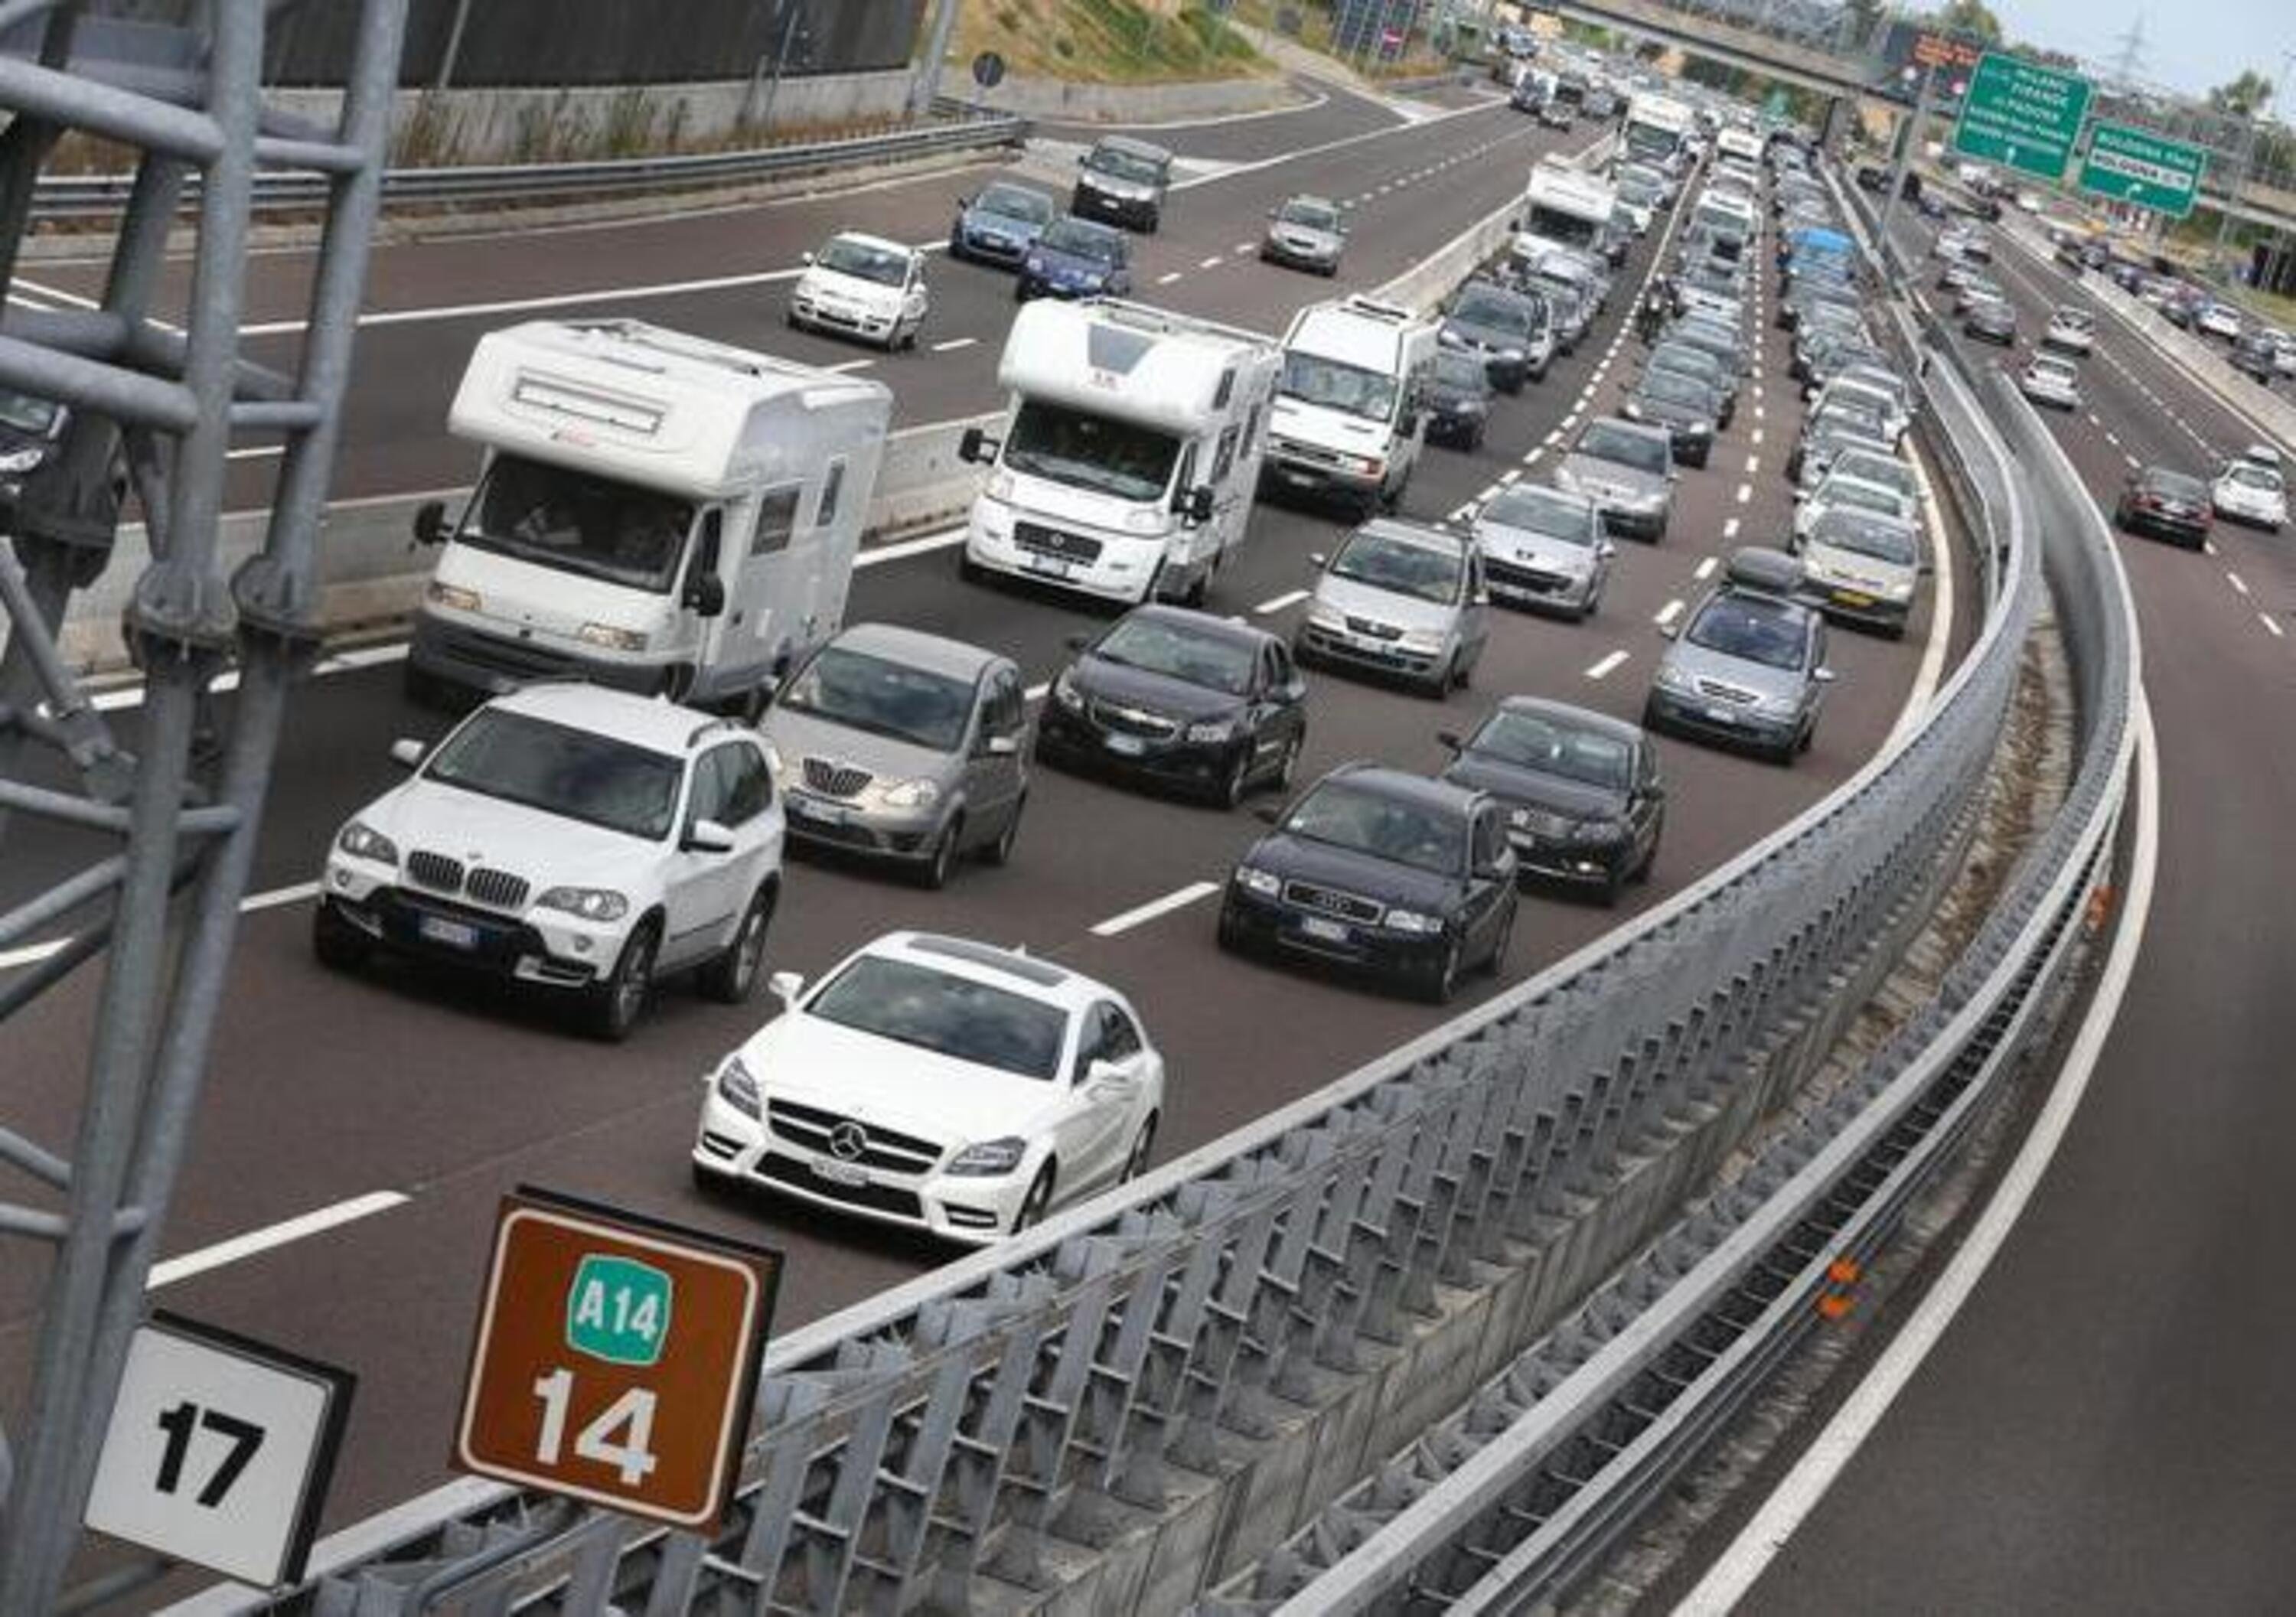 Istat: incidenti stradali stabili rispetto al 2018. Salgono i sinistri per le bici